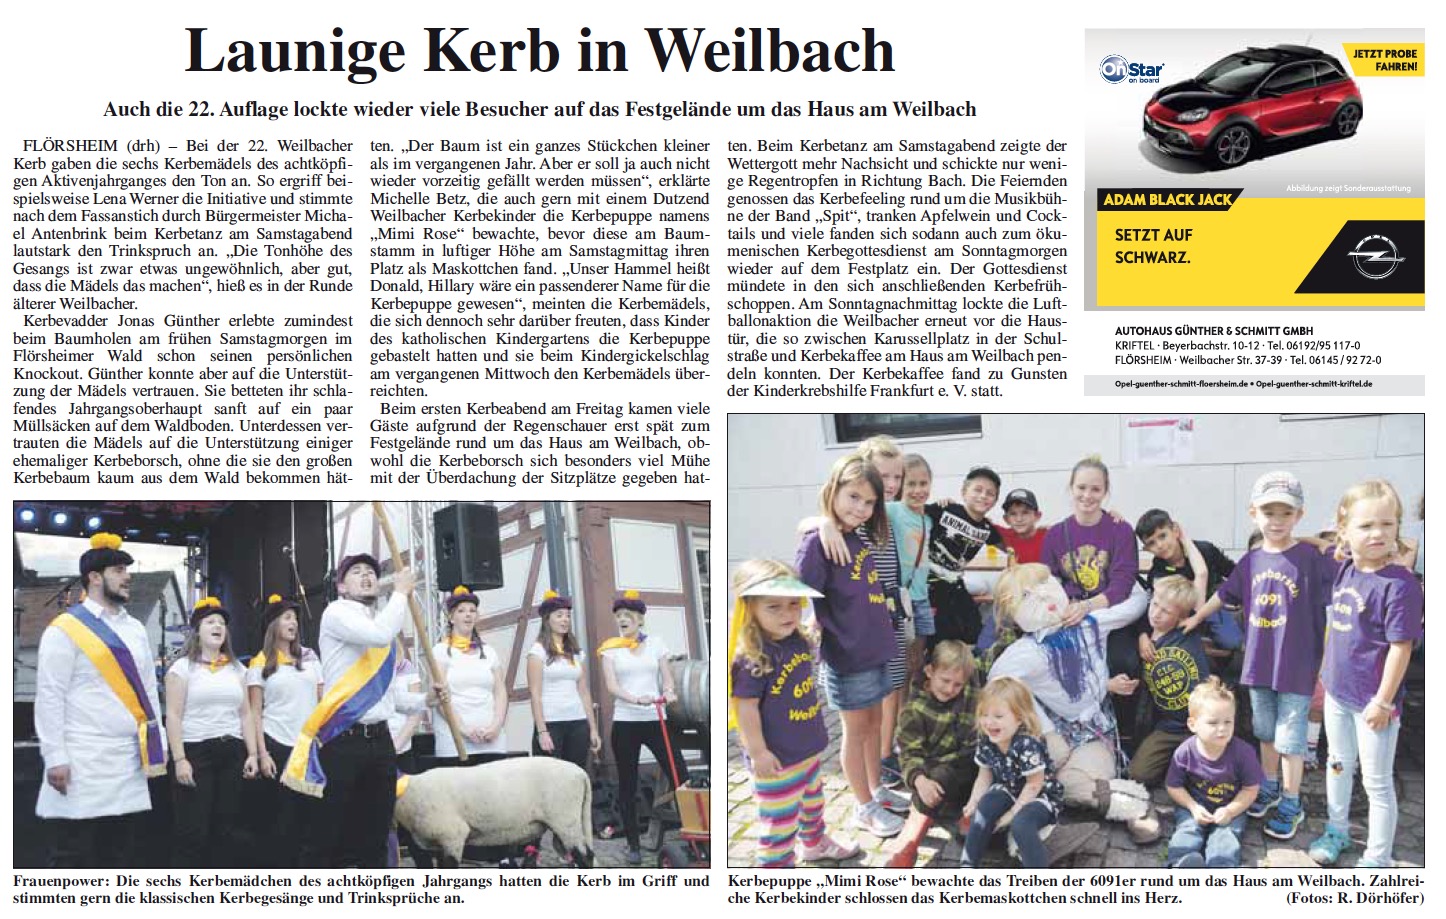 Flörsheimer Zeitung: Launige Kerb in Weilbach